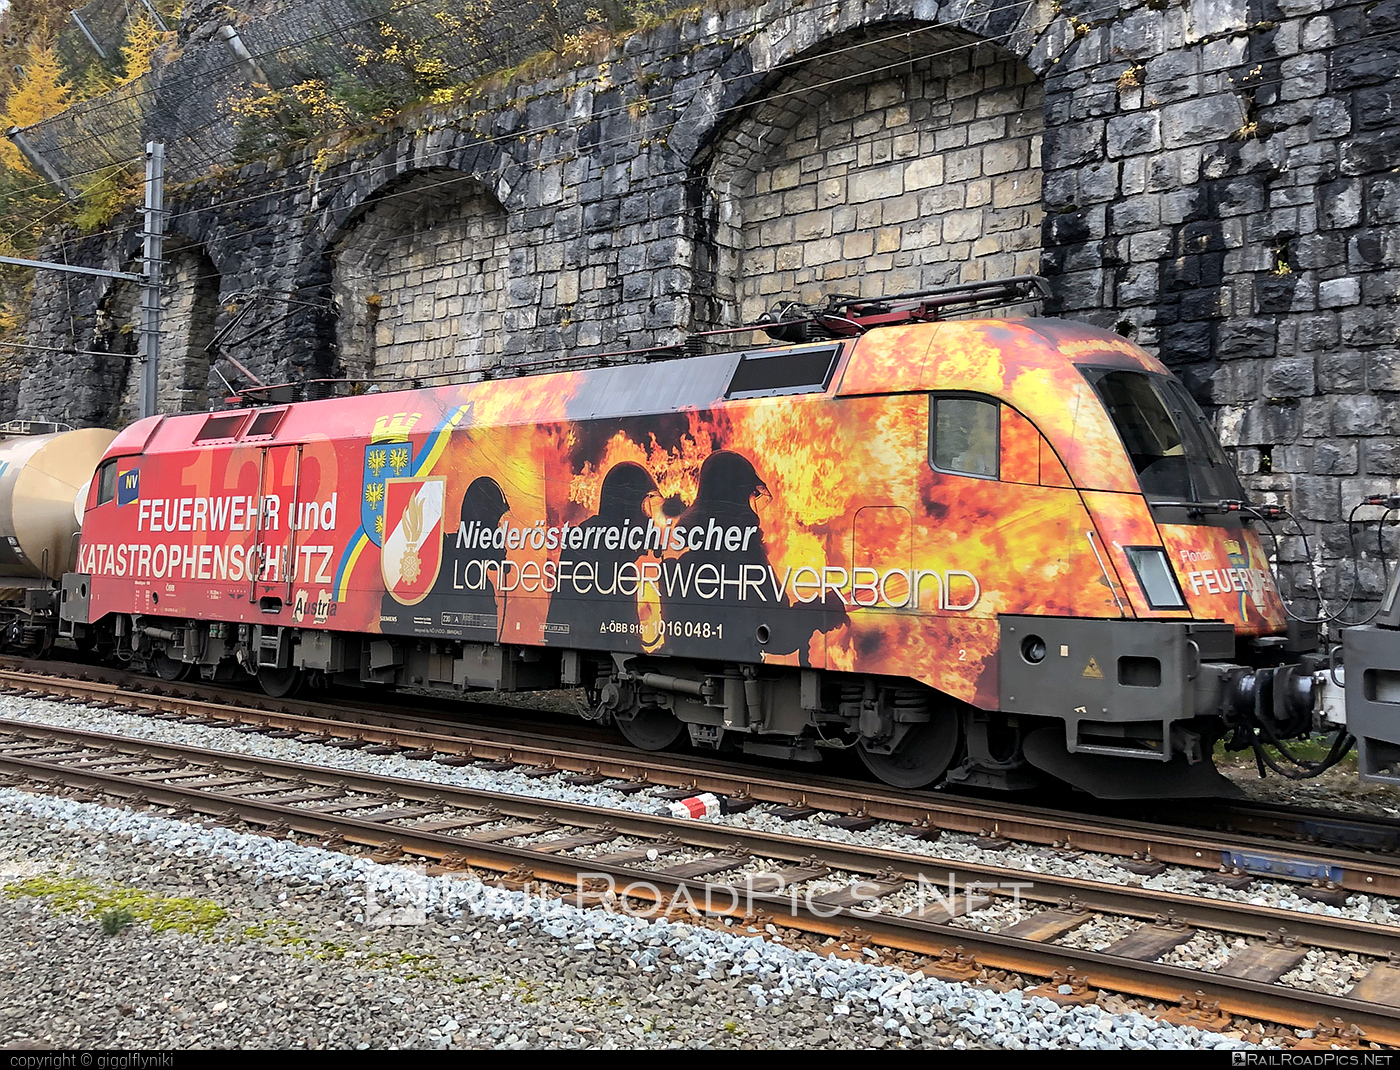 Siemens ES 64 U2 - 1016 048 operated by Rail Cargo Austria AG #es64 #es64u2 #eurosprinter #obb #osterreichischebundesbahnen #rcw #siemens #siemensEs64 #siemensEs64u2 #siemenstaurus #taurus #tauruslocomotive